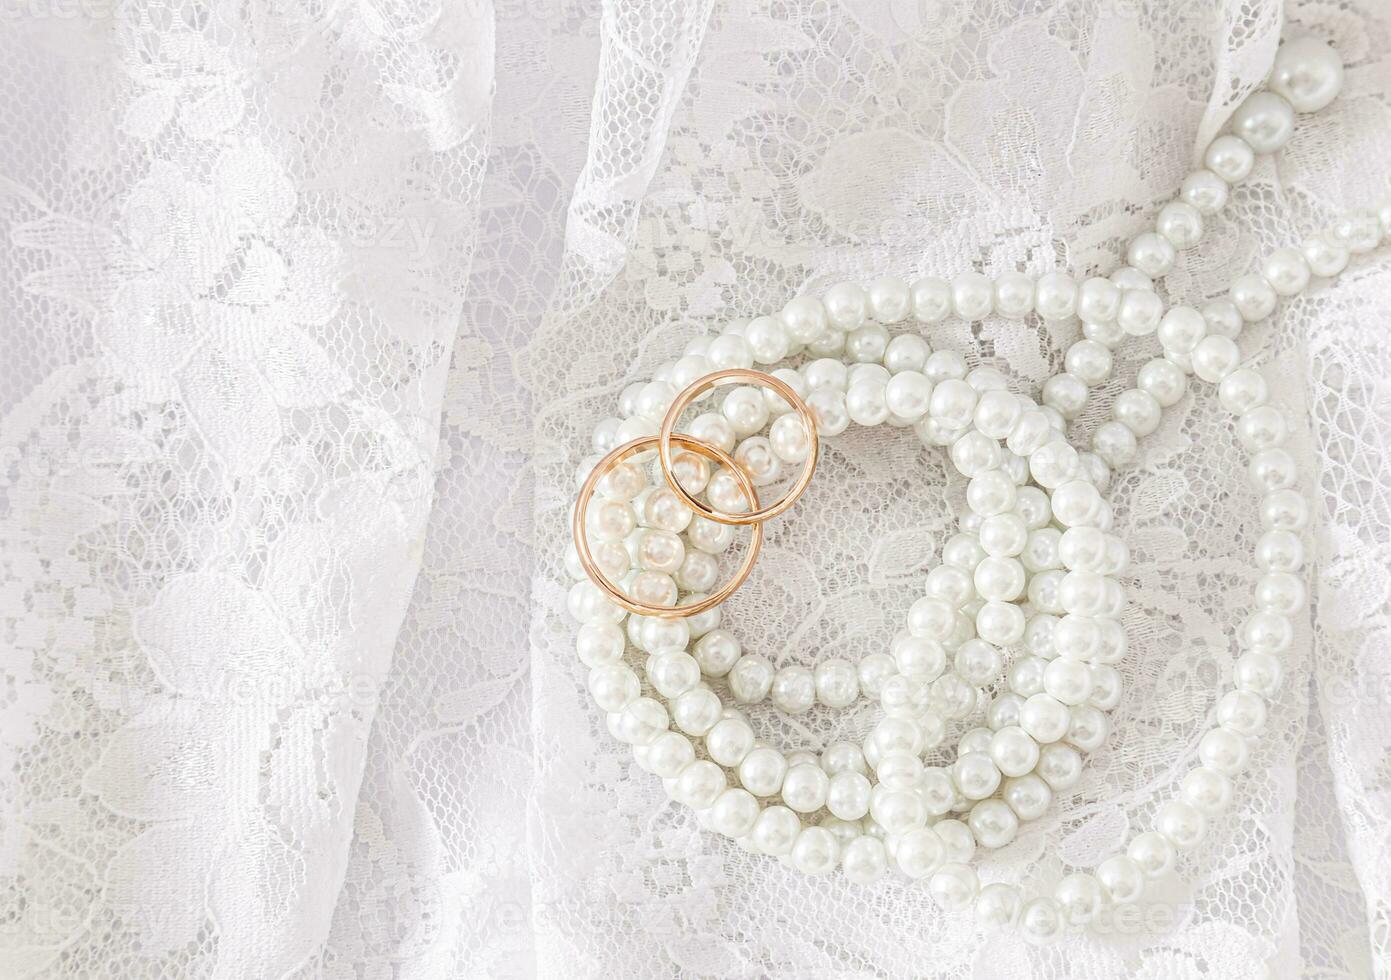 dos oro Boda anillos mentira en un lujoso Clásico parte de el de la novia Boda vestir con un cuerda de perla rosario. Boda concepto. parte superior vista. foto